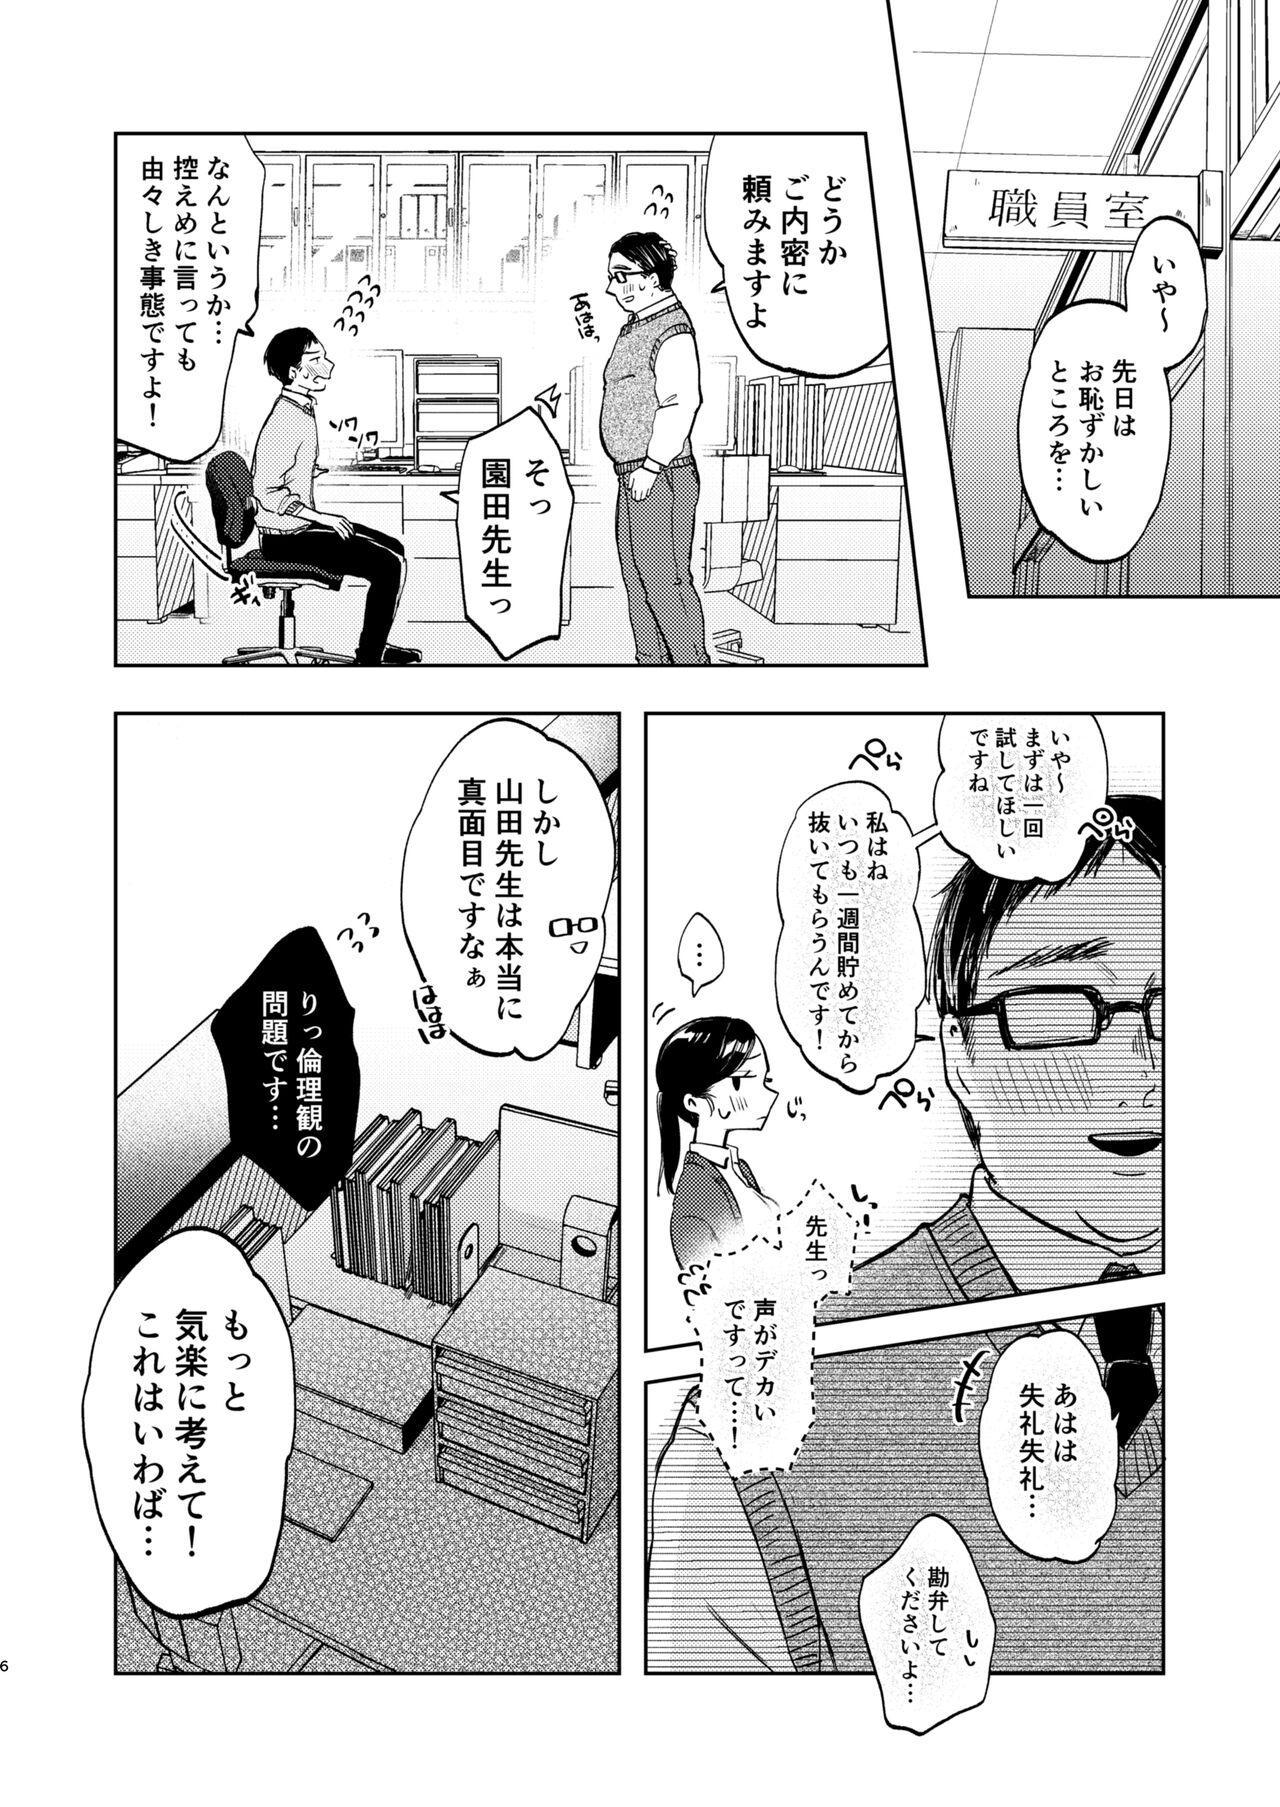 Desperate Kono Gakuen ni wa Himitsu no Shibo sei-bu ga arurashi… - Original Bdsm - Page 7